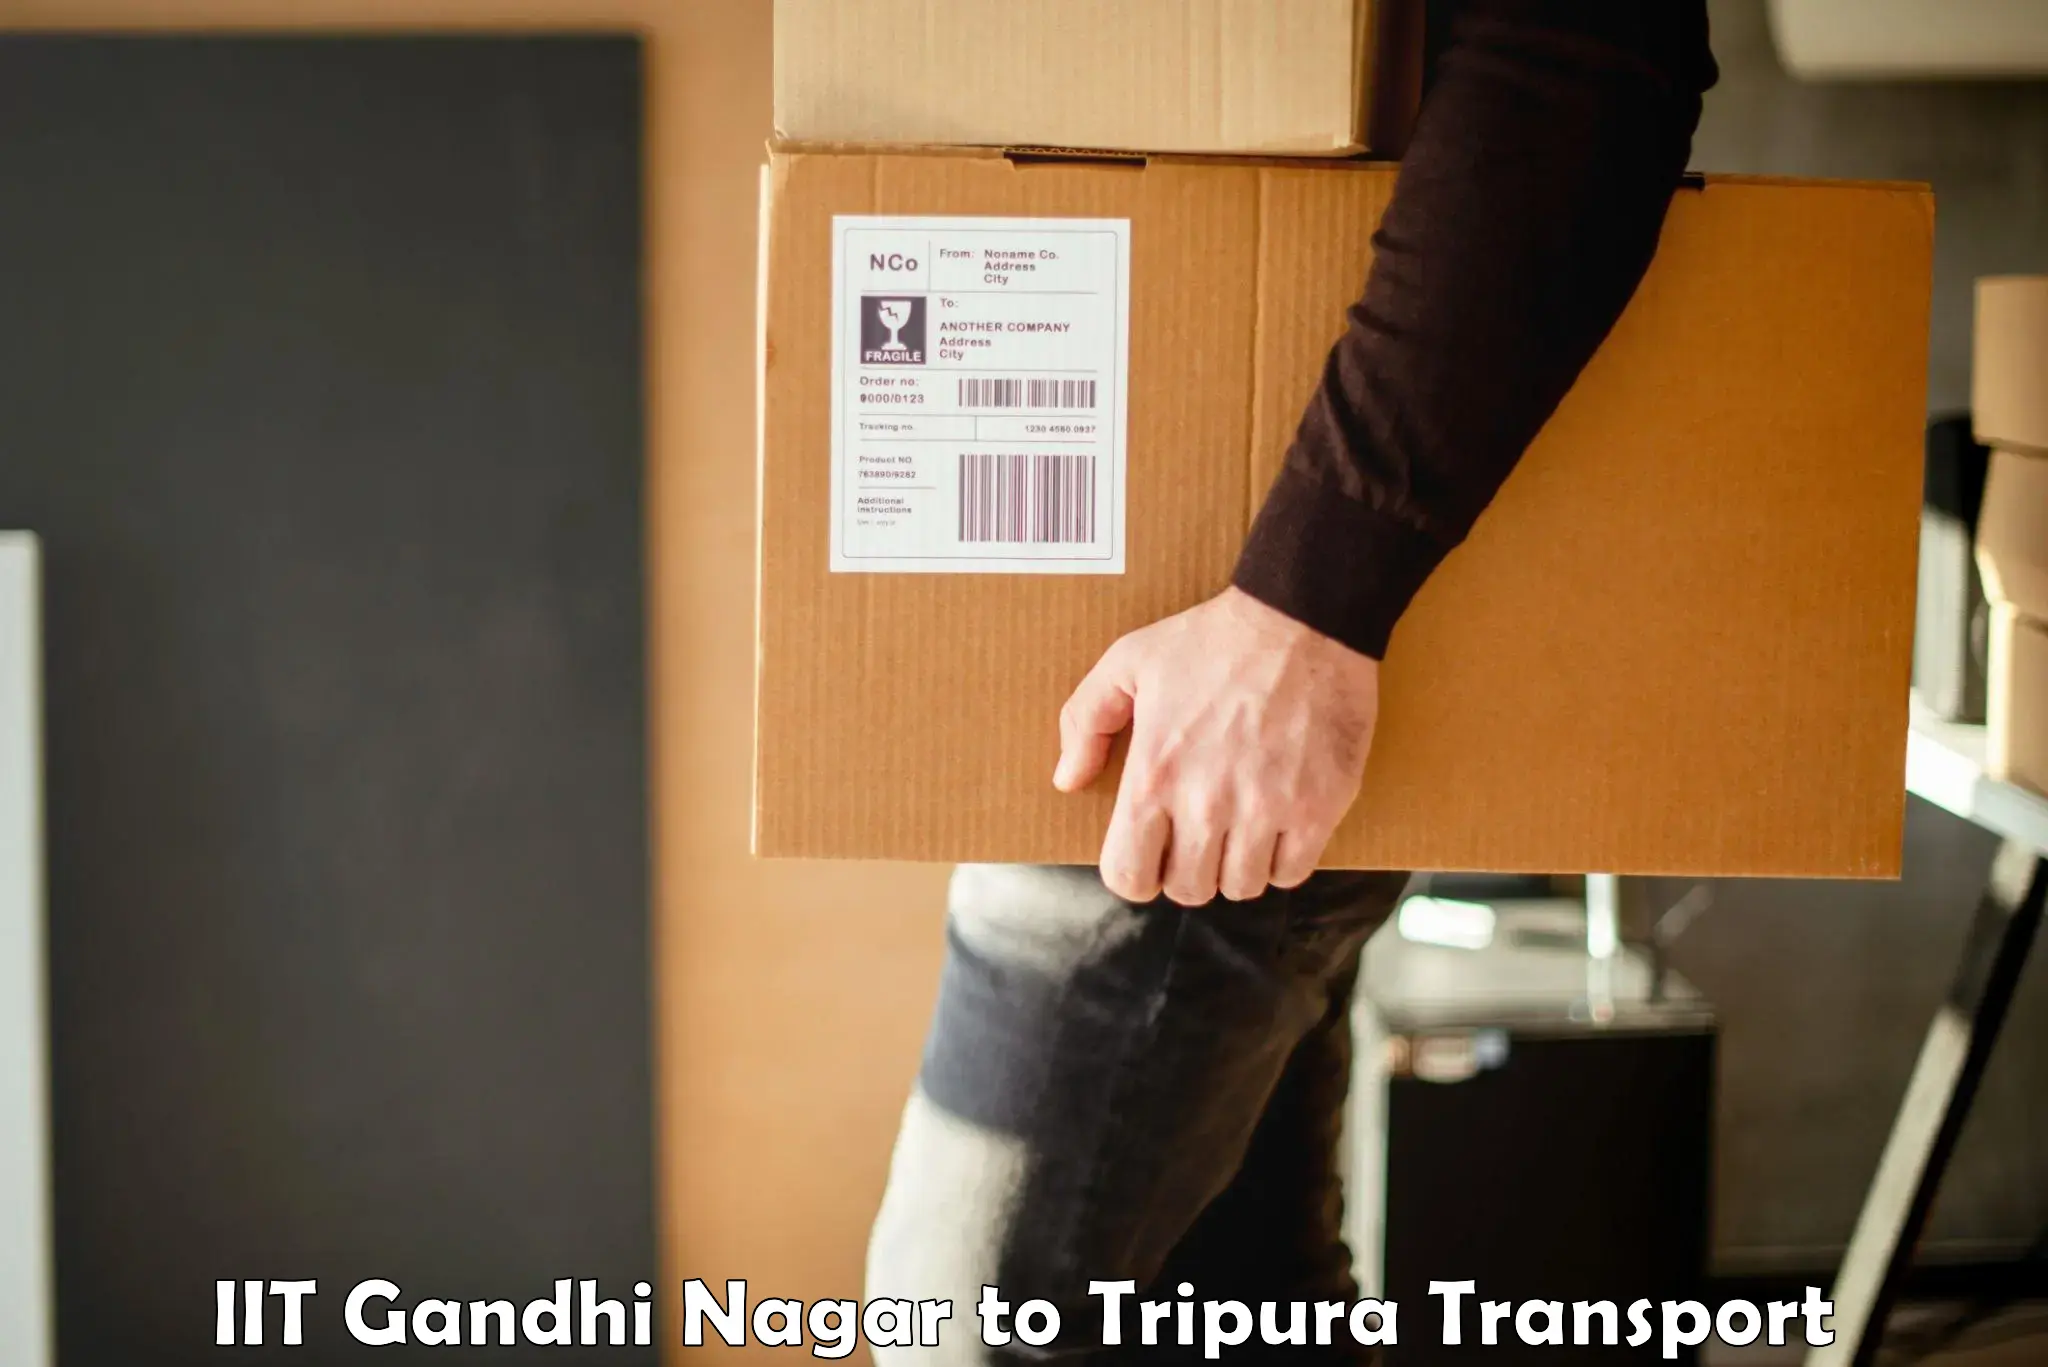 Cargo train transport services IIT Gandhi Nagar to Agartala